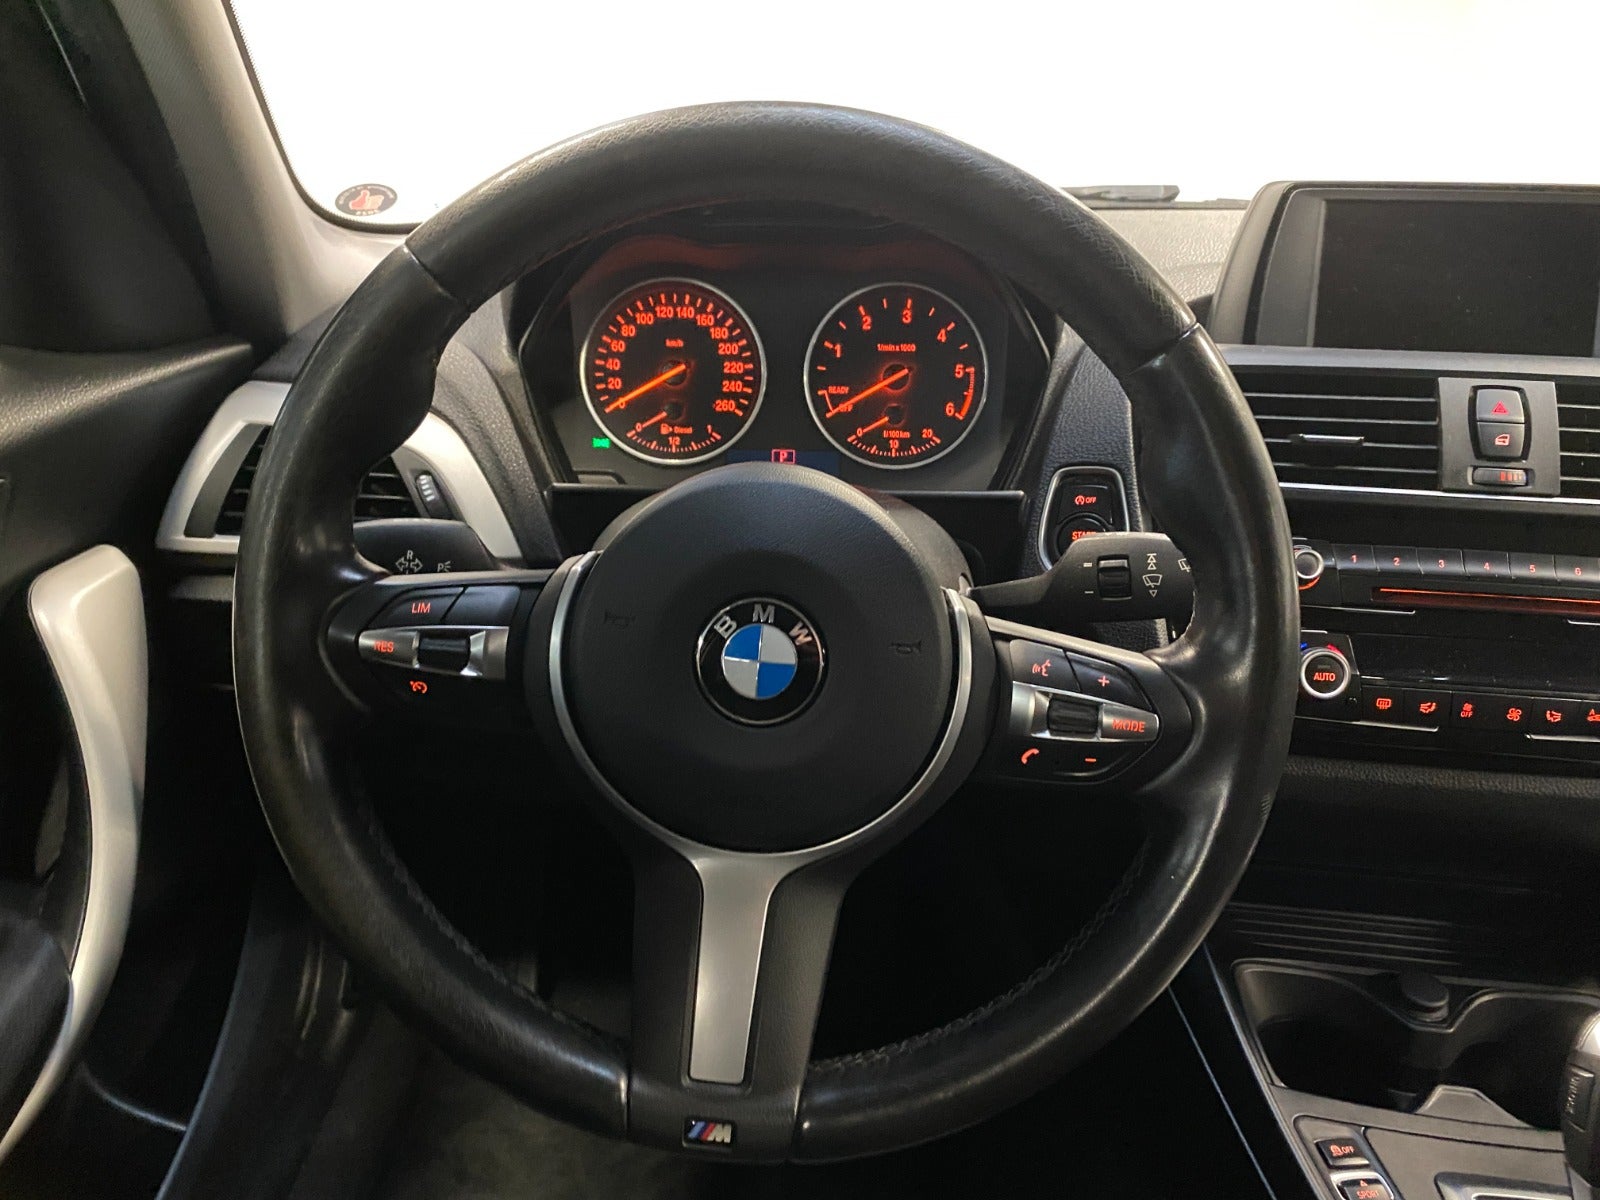 BMW 120d 2,0 aut. Diesel aut. Automatgear modelår 2016 km